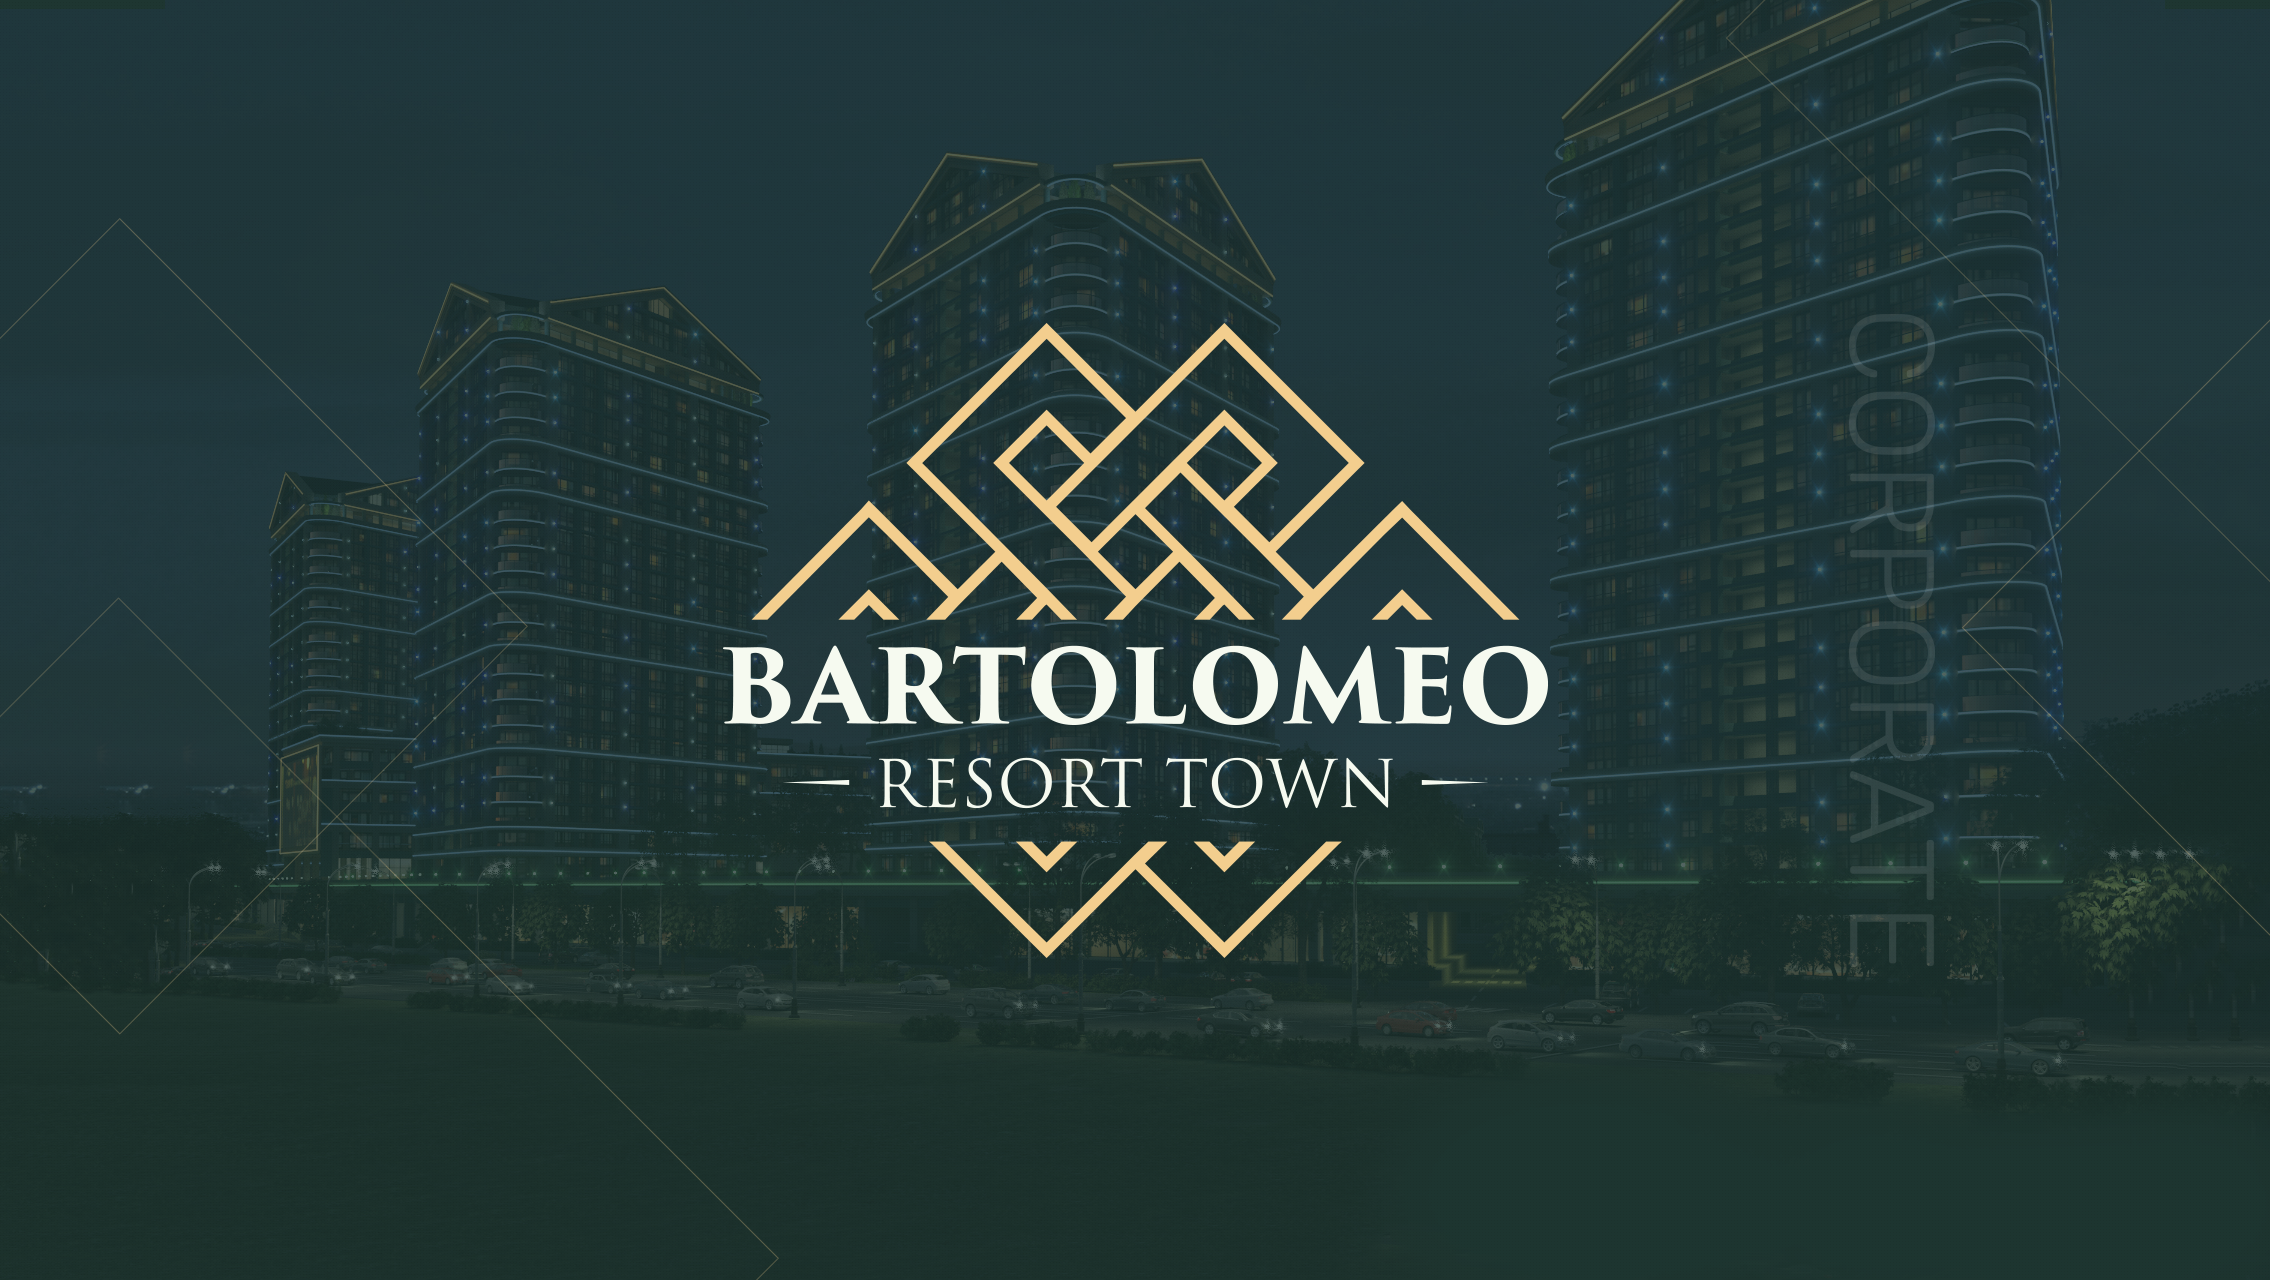 Створення корпоративного сайту ЖК Bartolomeo resort town